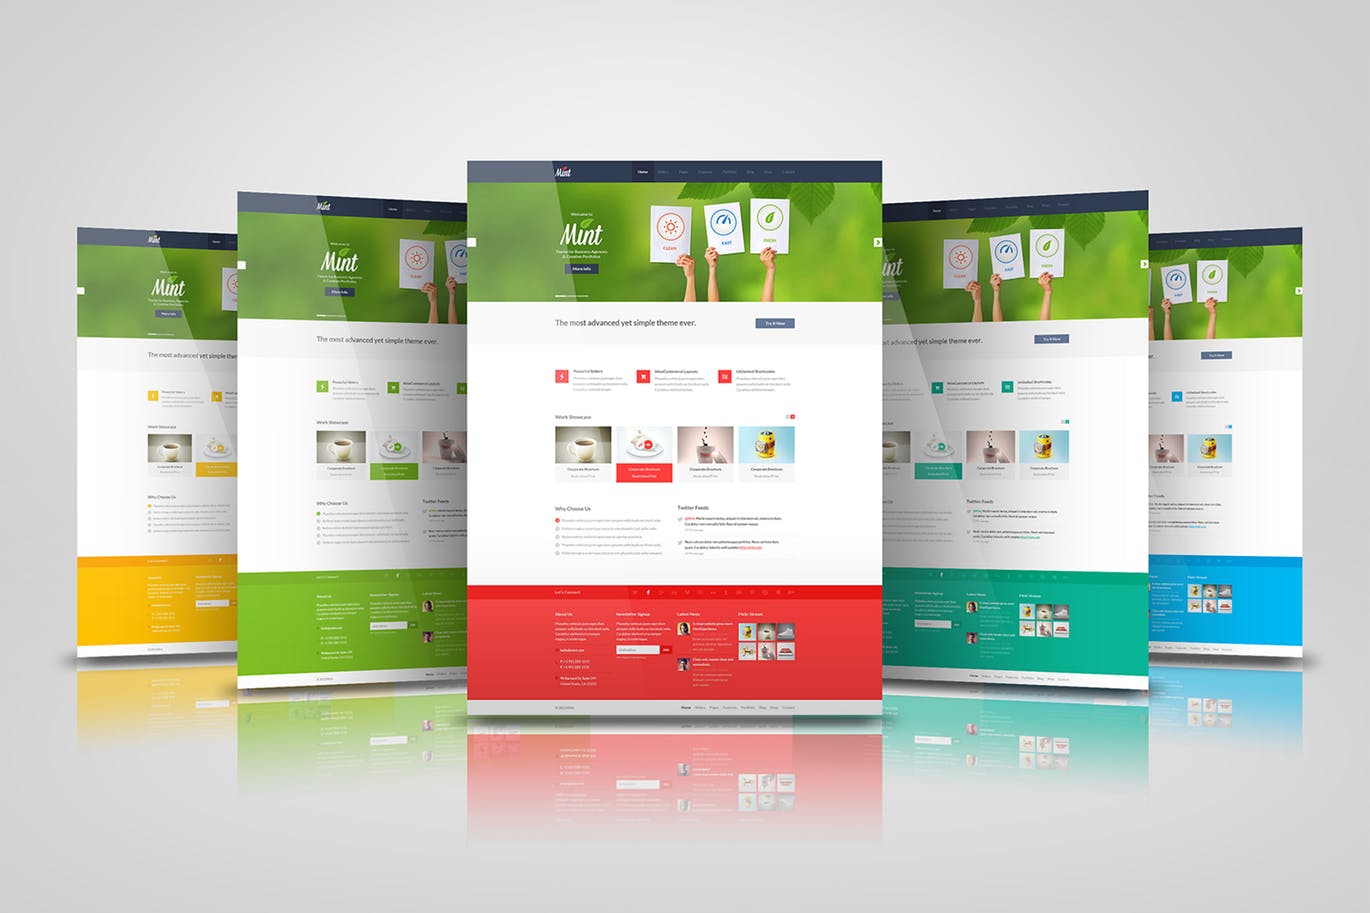 网站/网页设计效果图样机模板素材 web pages presentation mock up